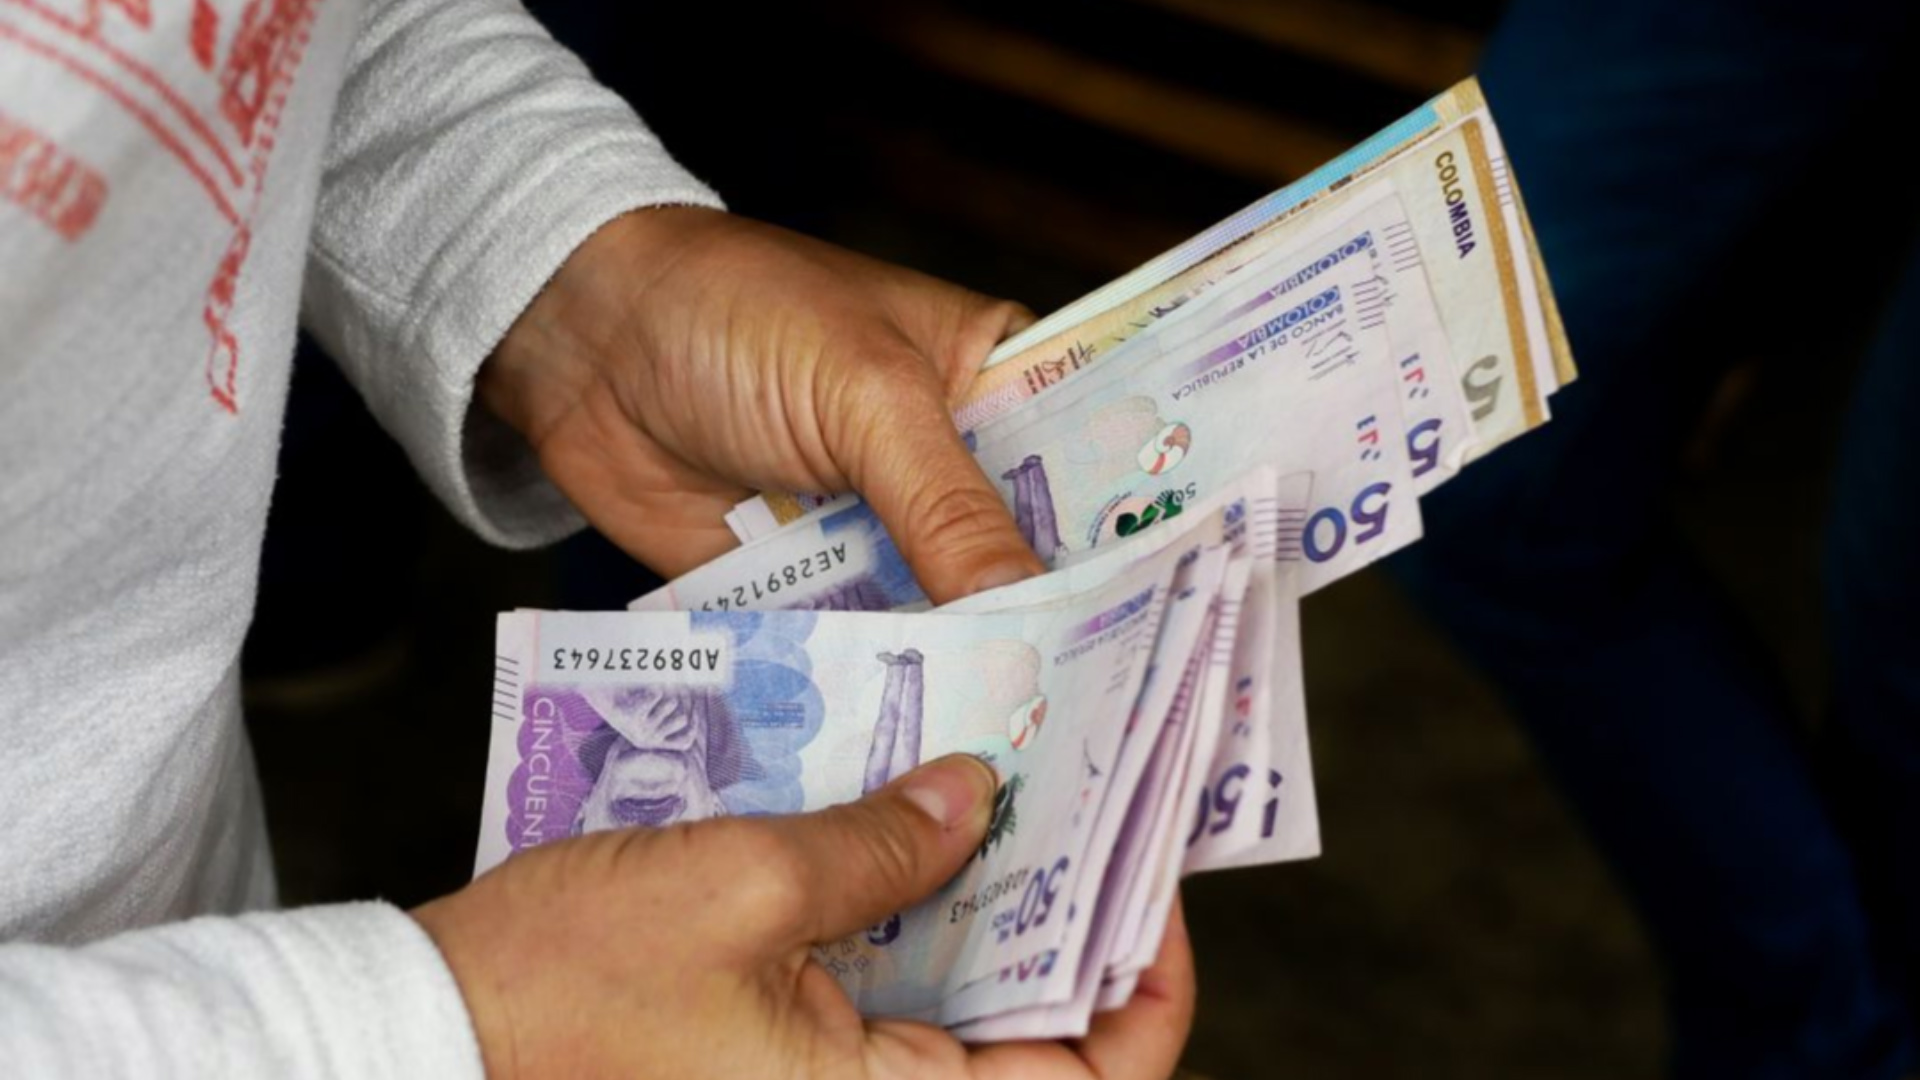 Salario mínimo en Colombia no llegaría al millón de pesos, aseguran expertos Vía: Prosperidad Social